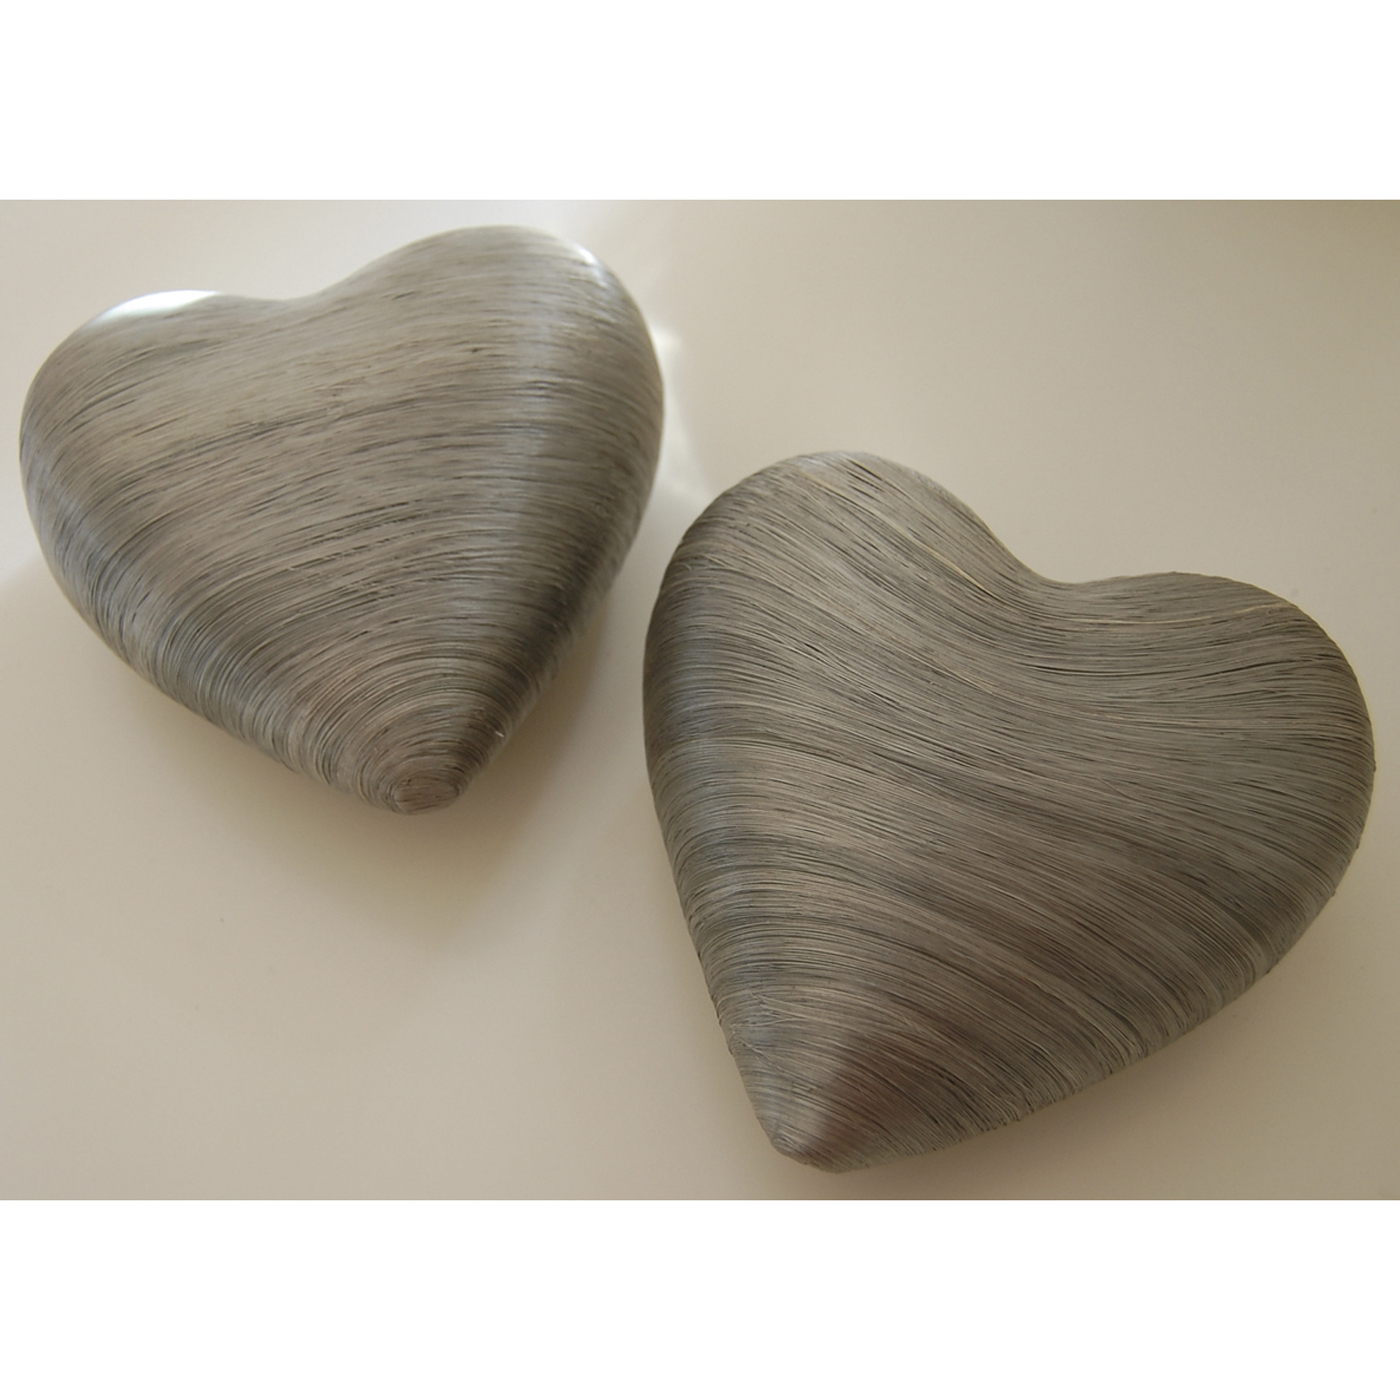 Deko-Herzen, silber/grau, 160 mm - 3 Stück